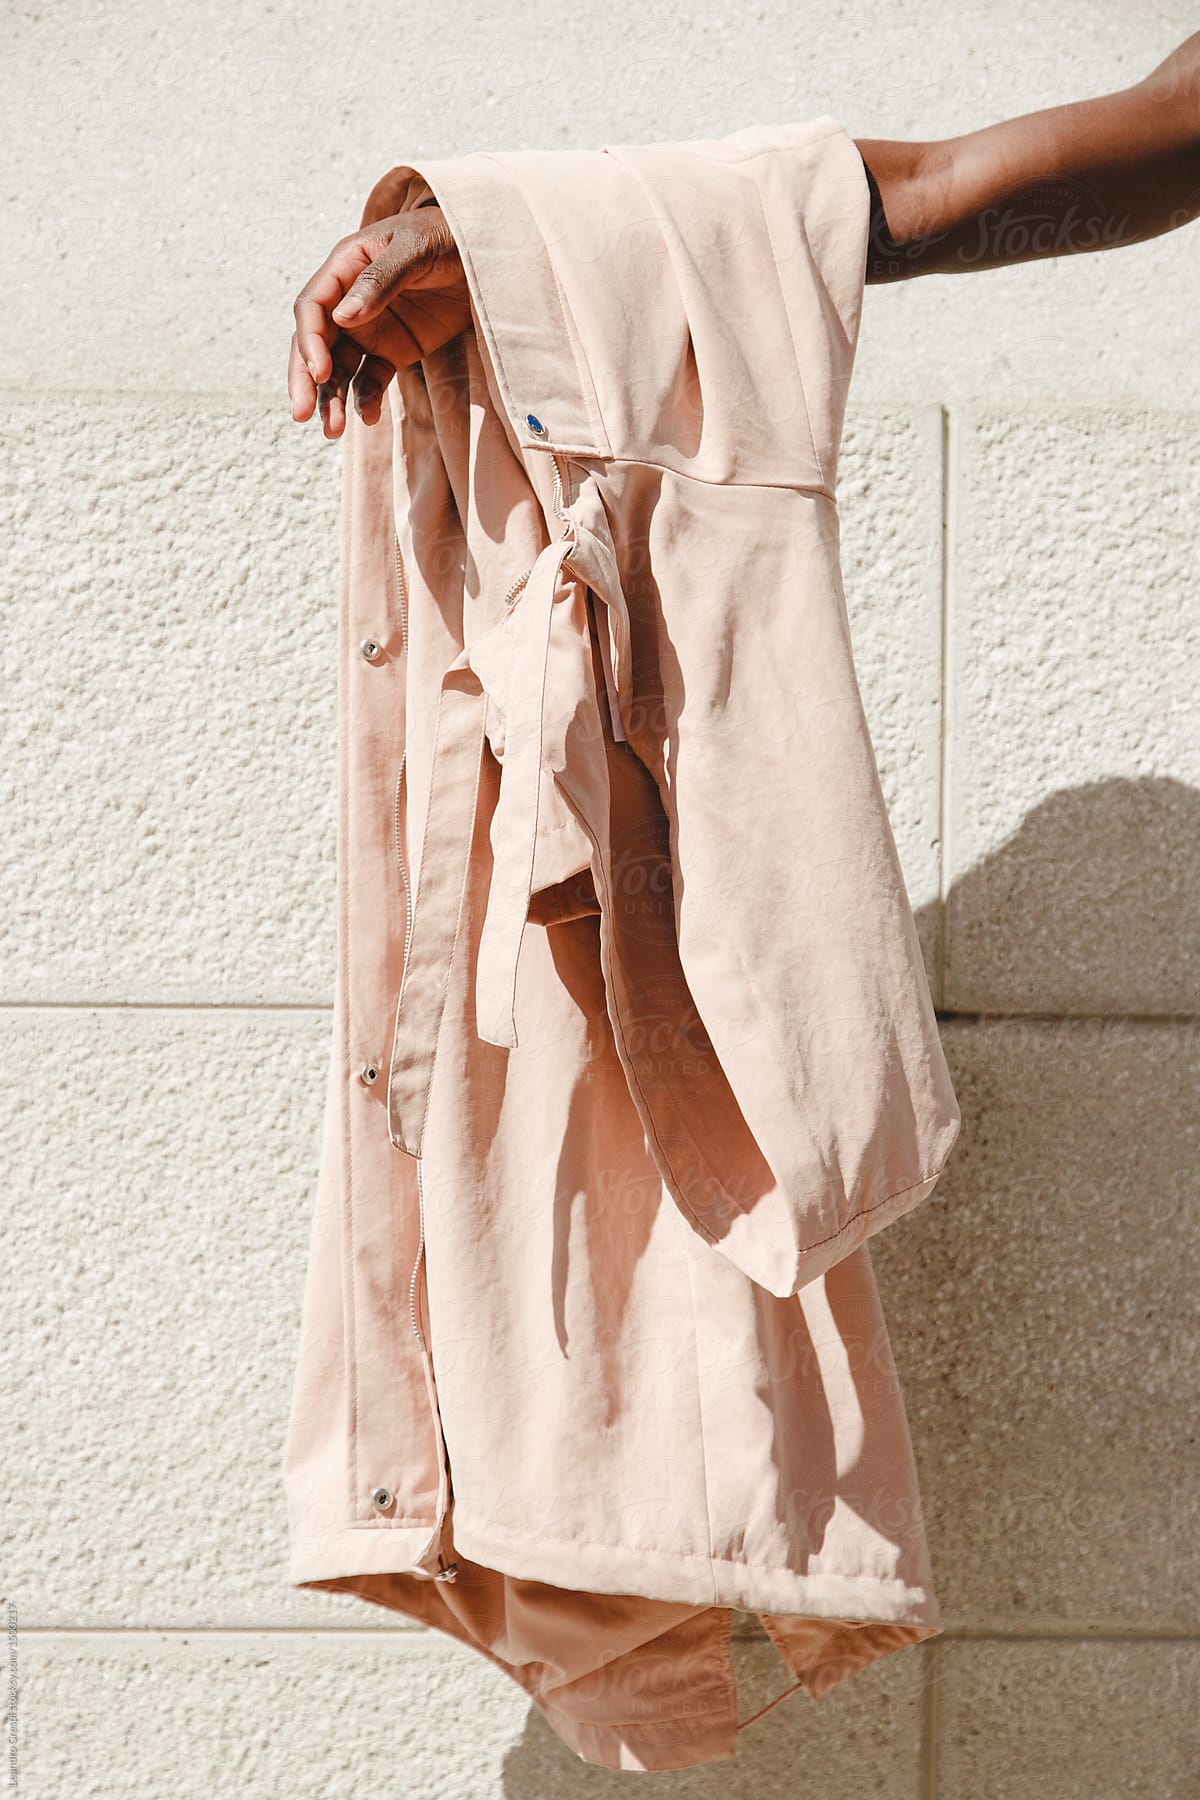 Basics on pink fashion outdoors